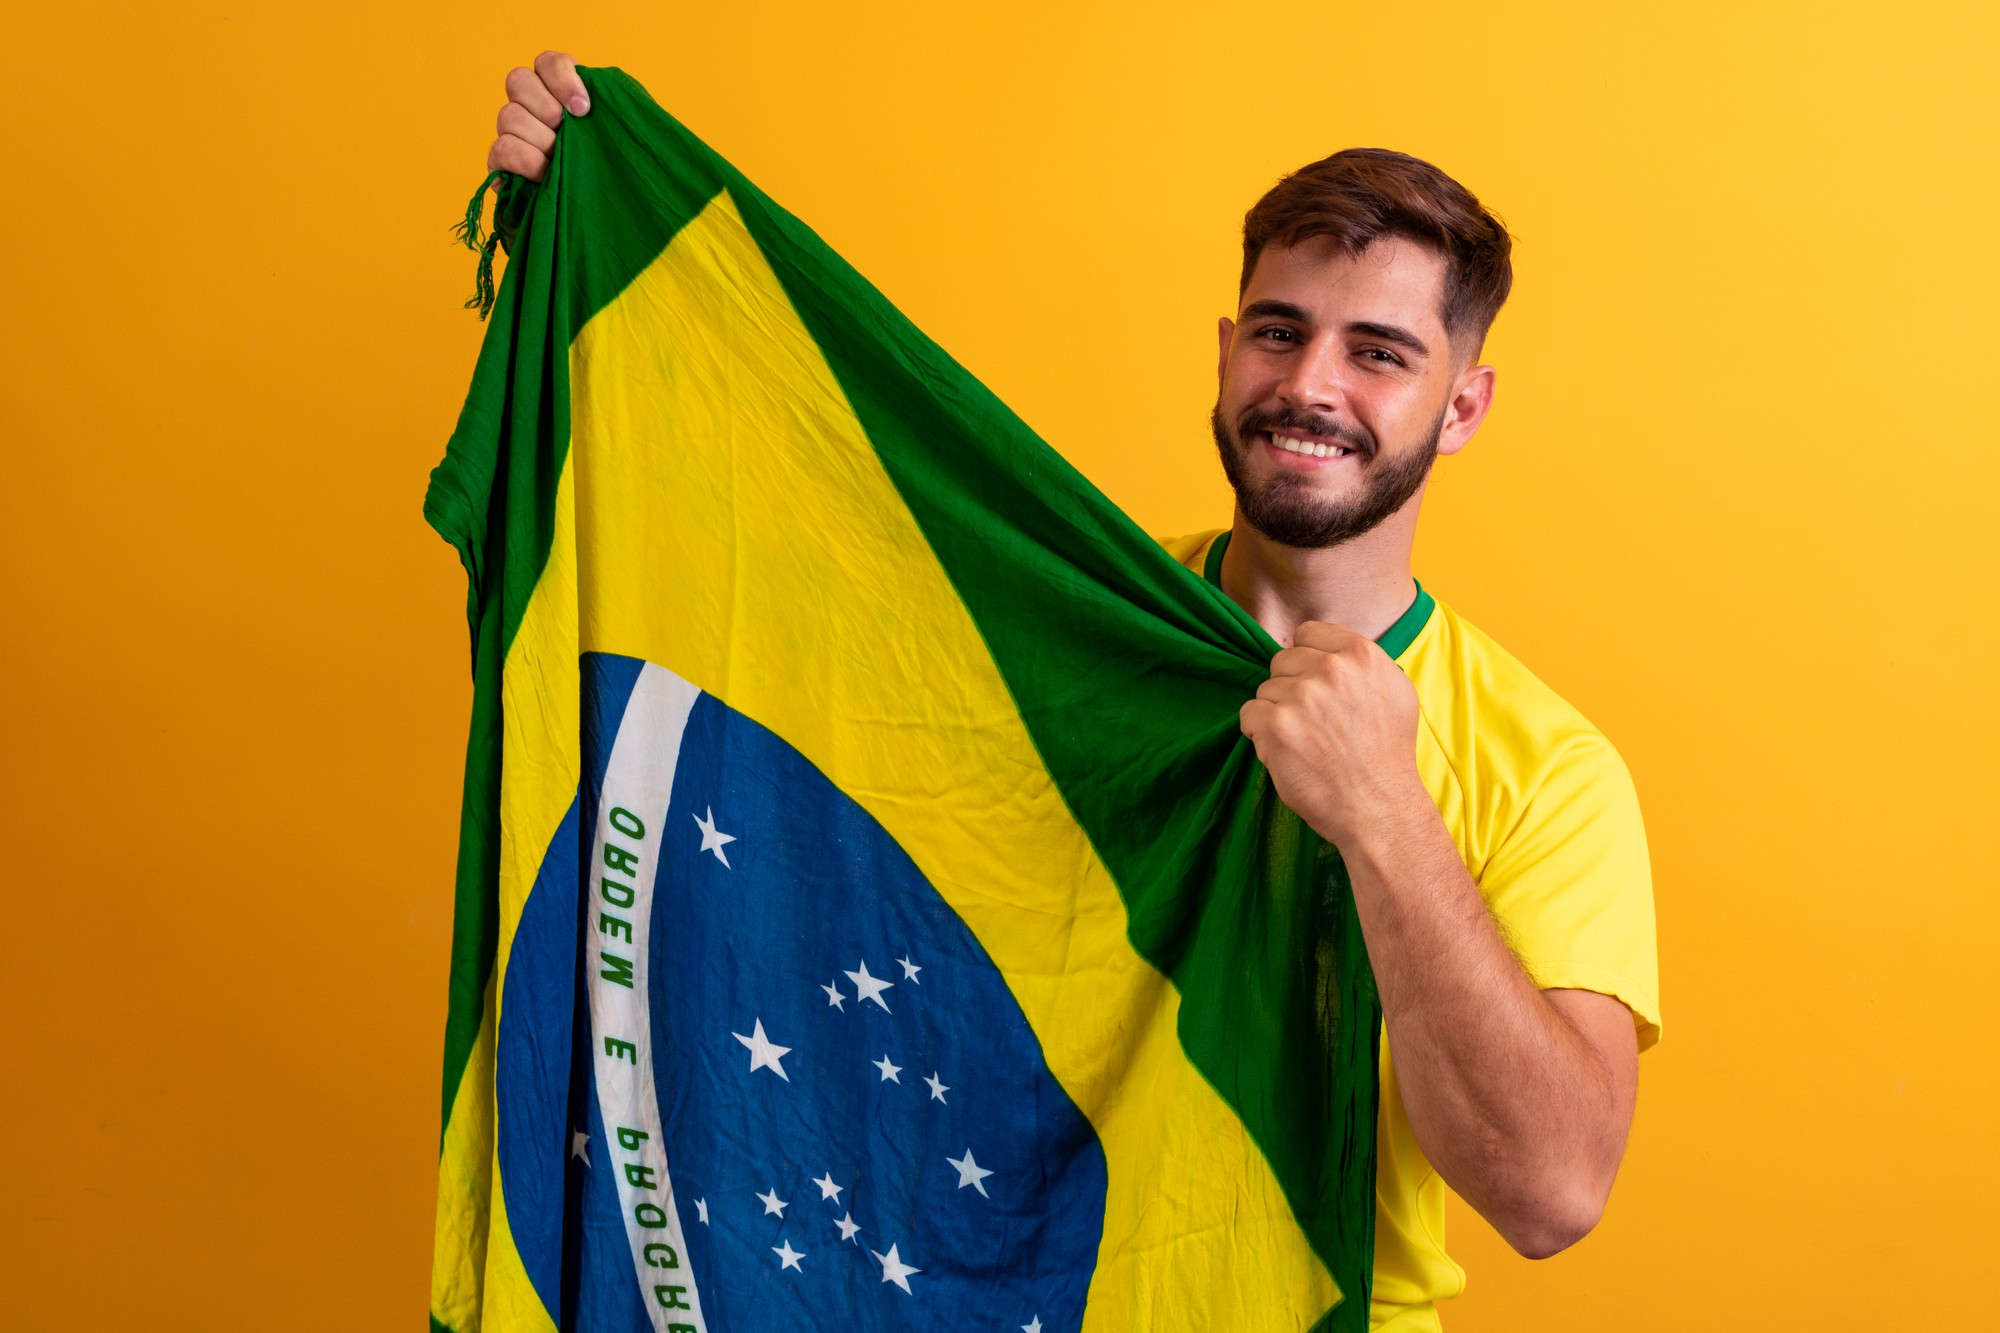 ¿Cuántas finales del mundo jugó Brasil?